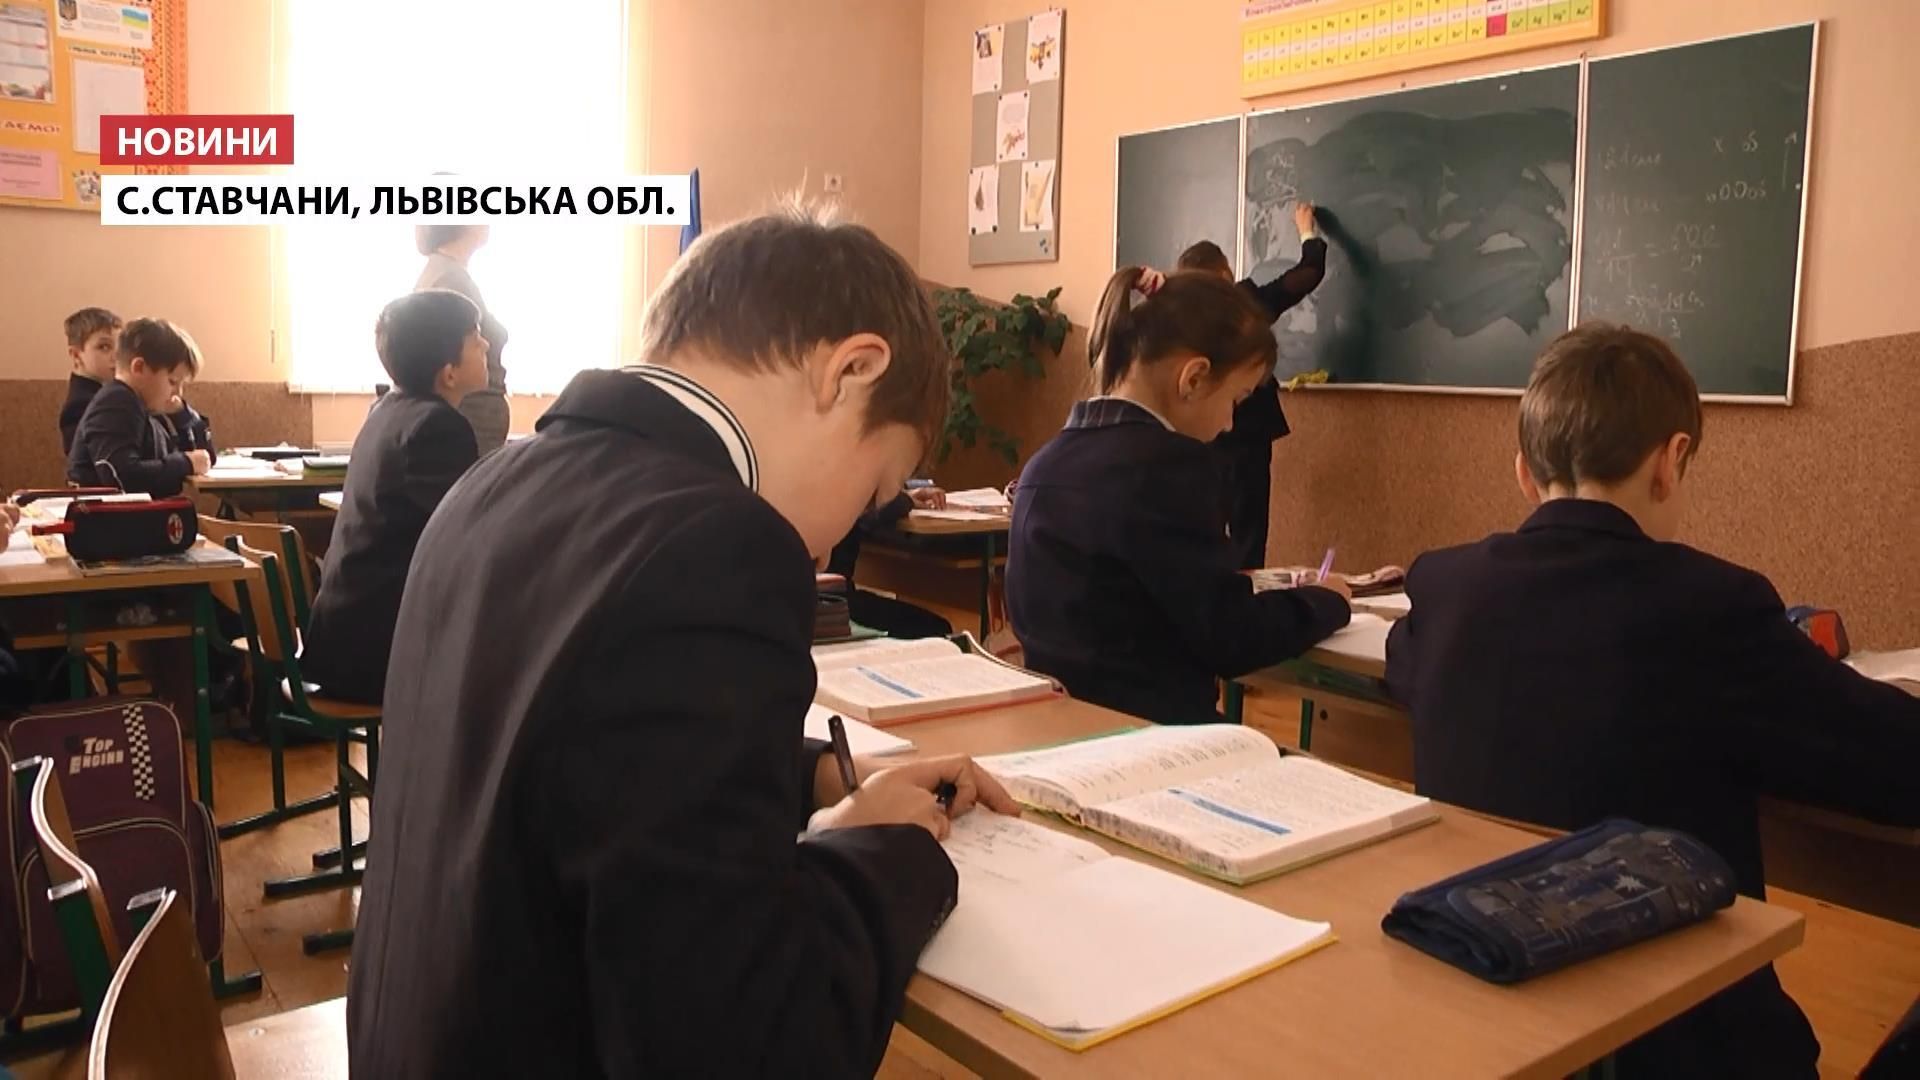 Скандал на Львівщині: учительку звинувачують у побитті учнів